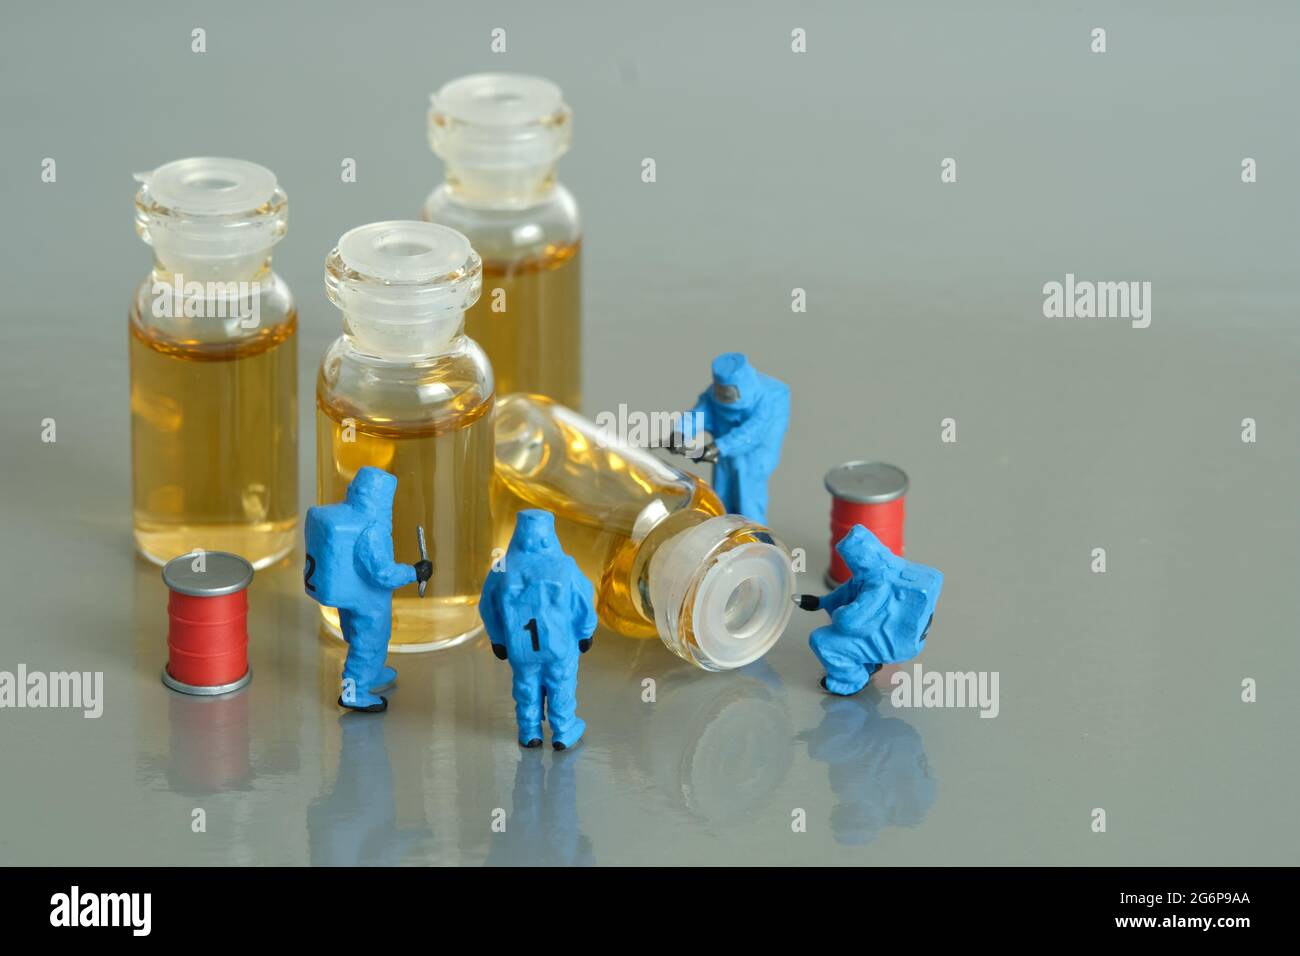 Miniatur Menschen Spielzeug Figur Fotografie. Test mit klinischen Impfstofftests. Eine Gruppe von Sanitätern mit einem Hasmatanzüge, der Impfampulle testet. Bildfoto Stockfoto